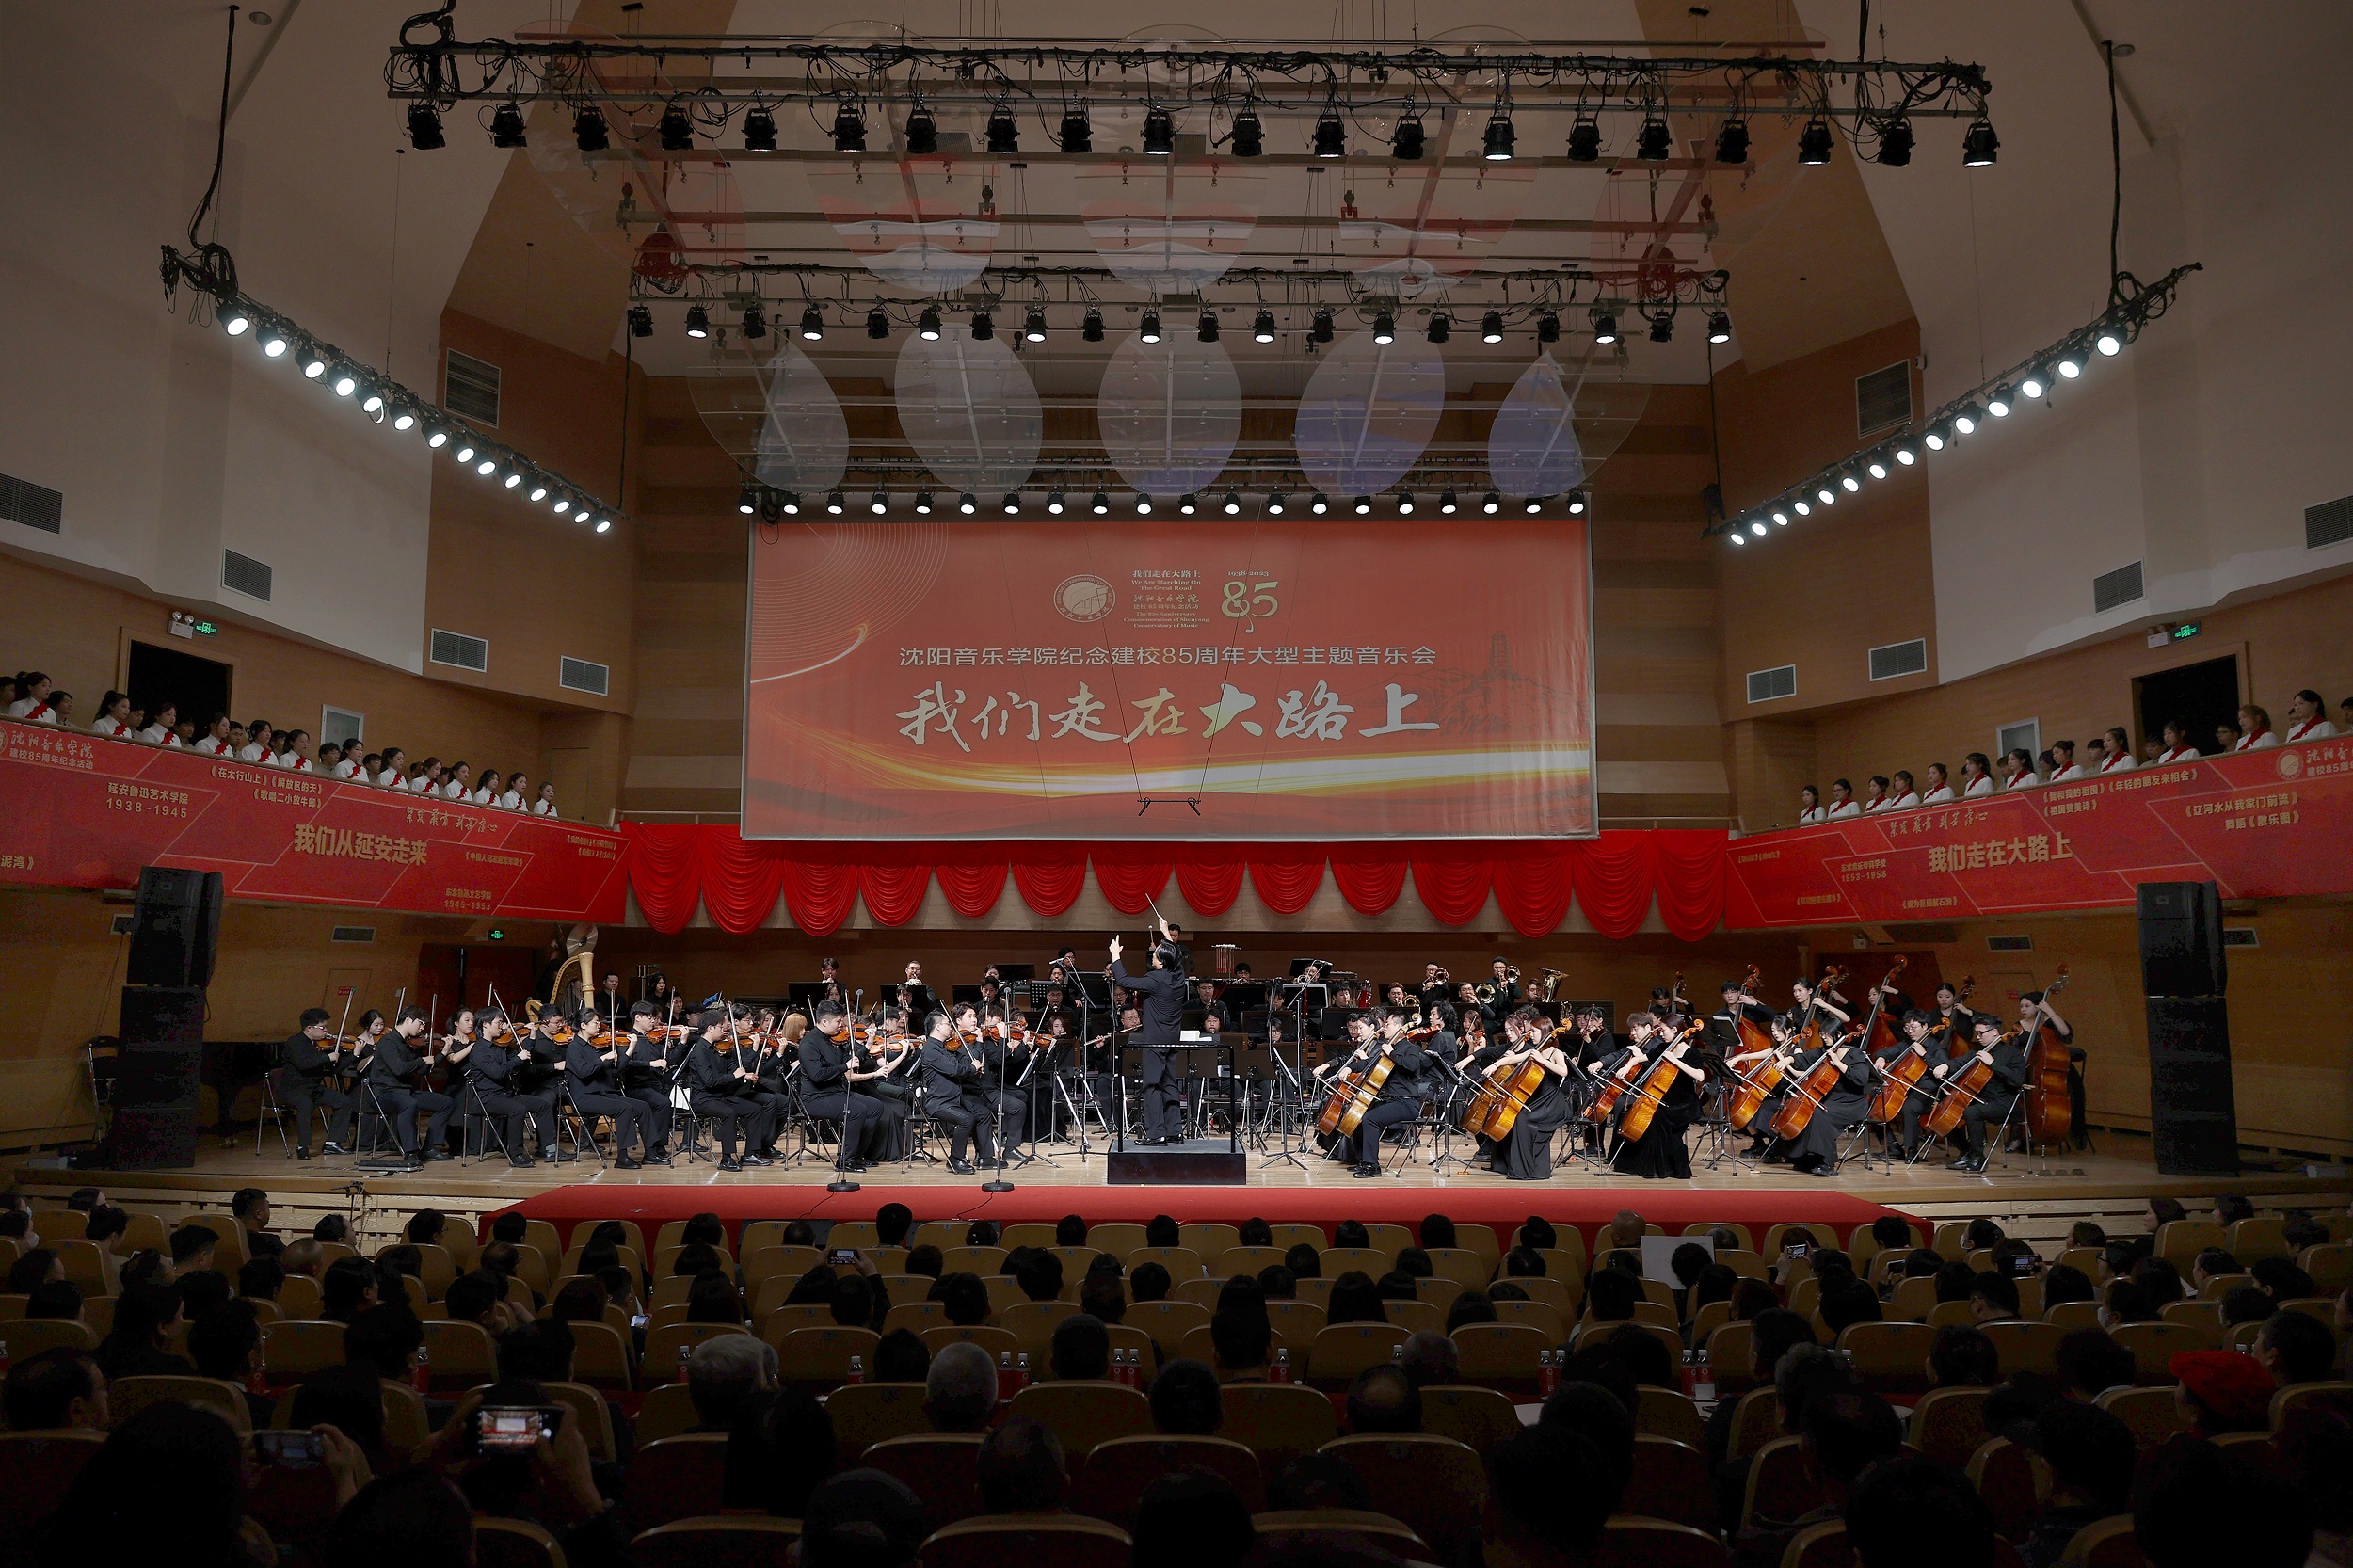 我們走在大路上——瀋陽音樂學院建校85周年大型主題音樂會精彩上演